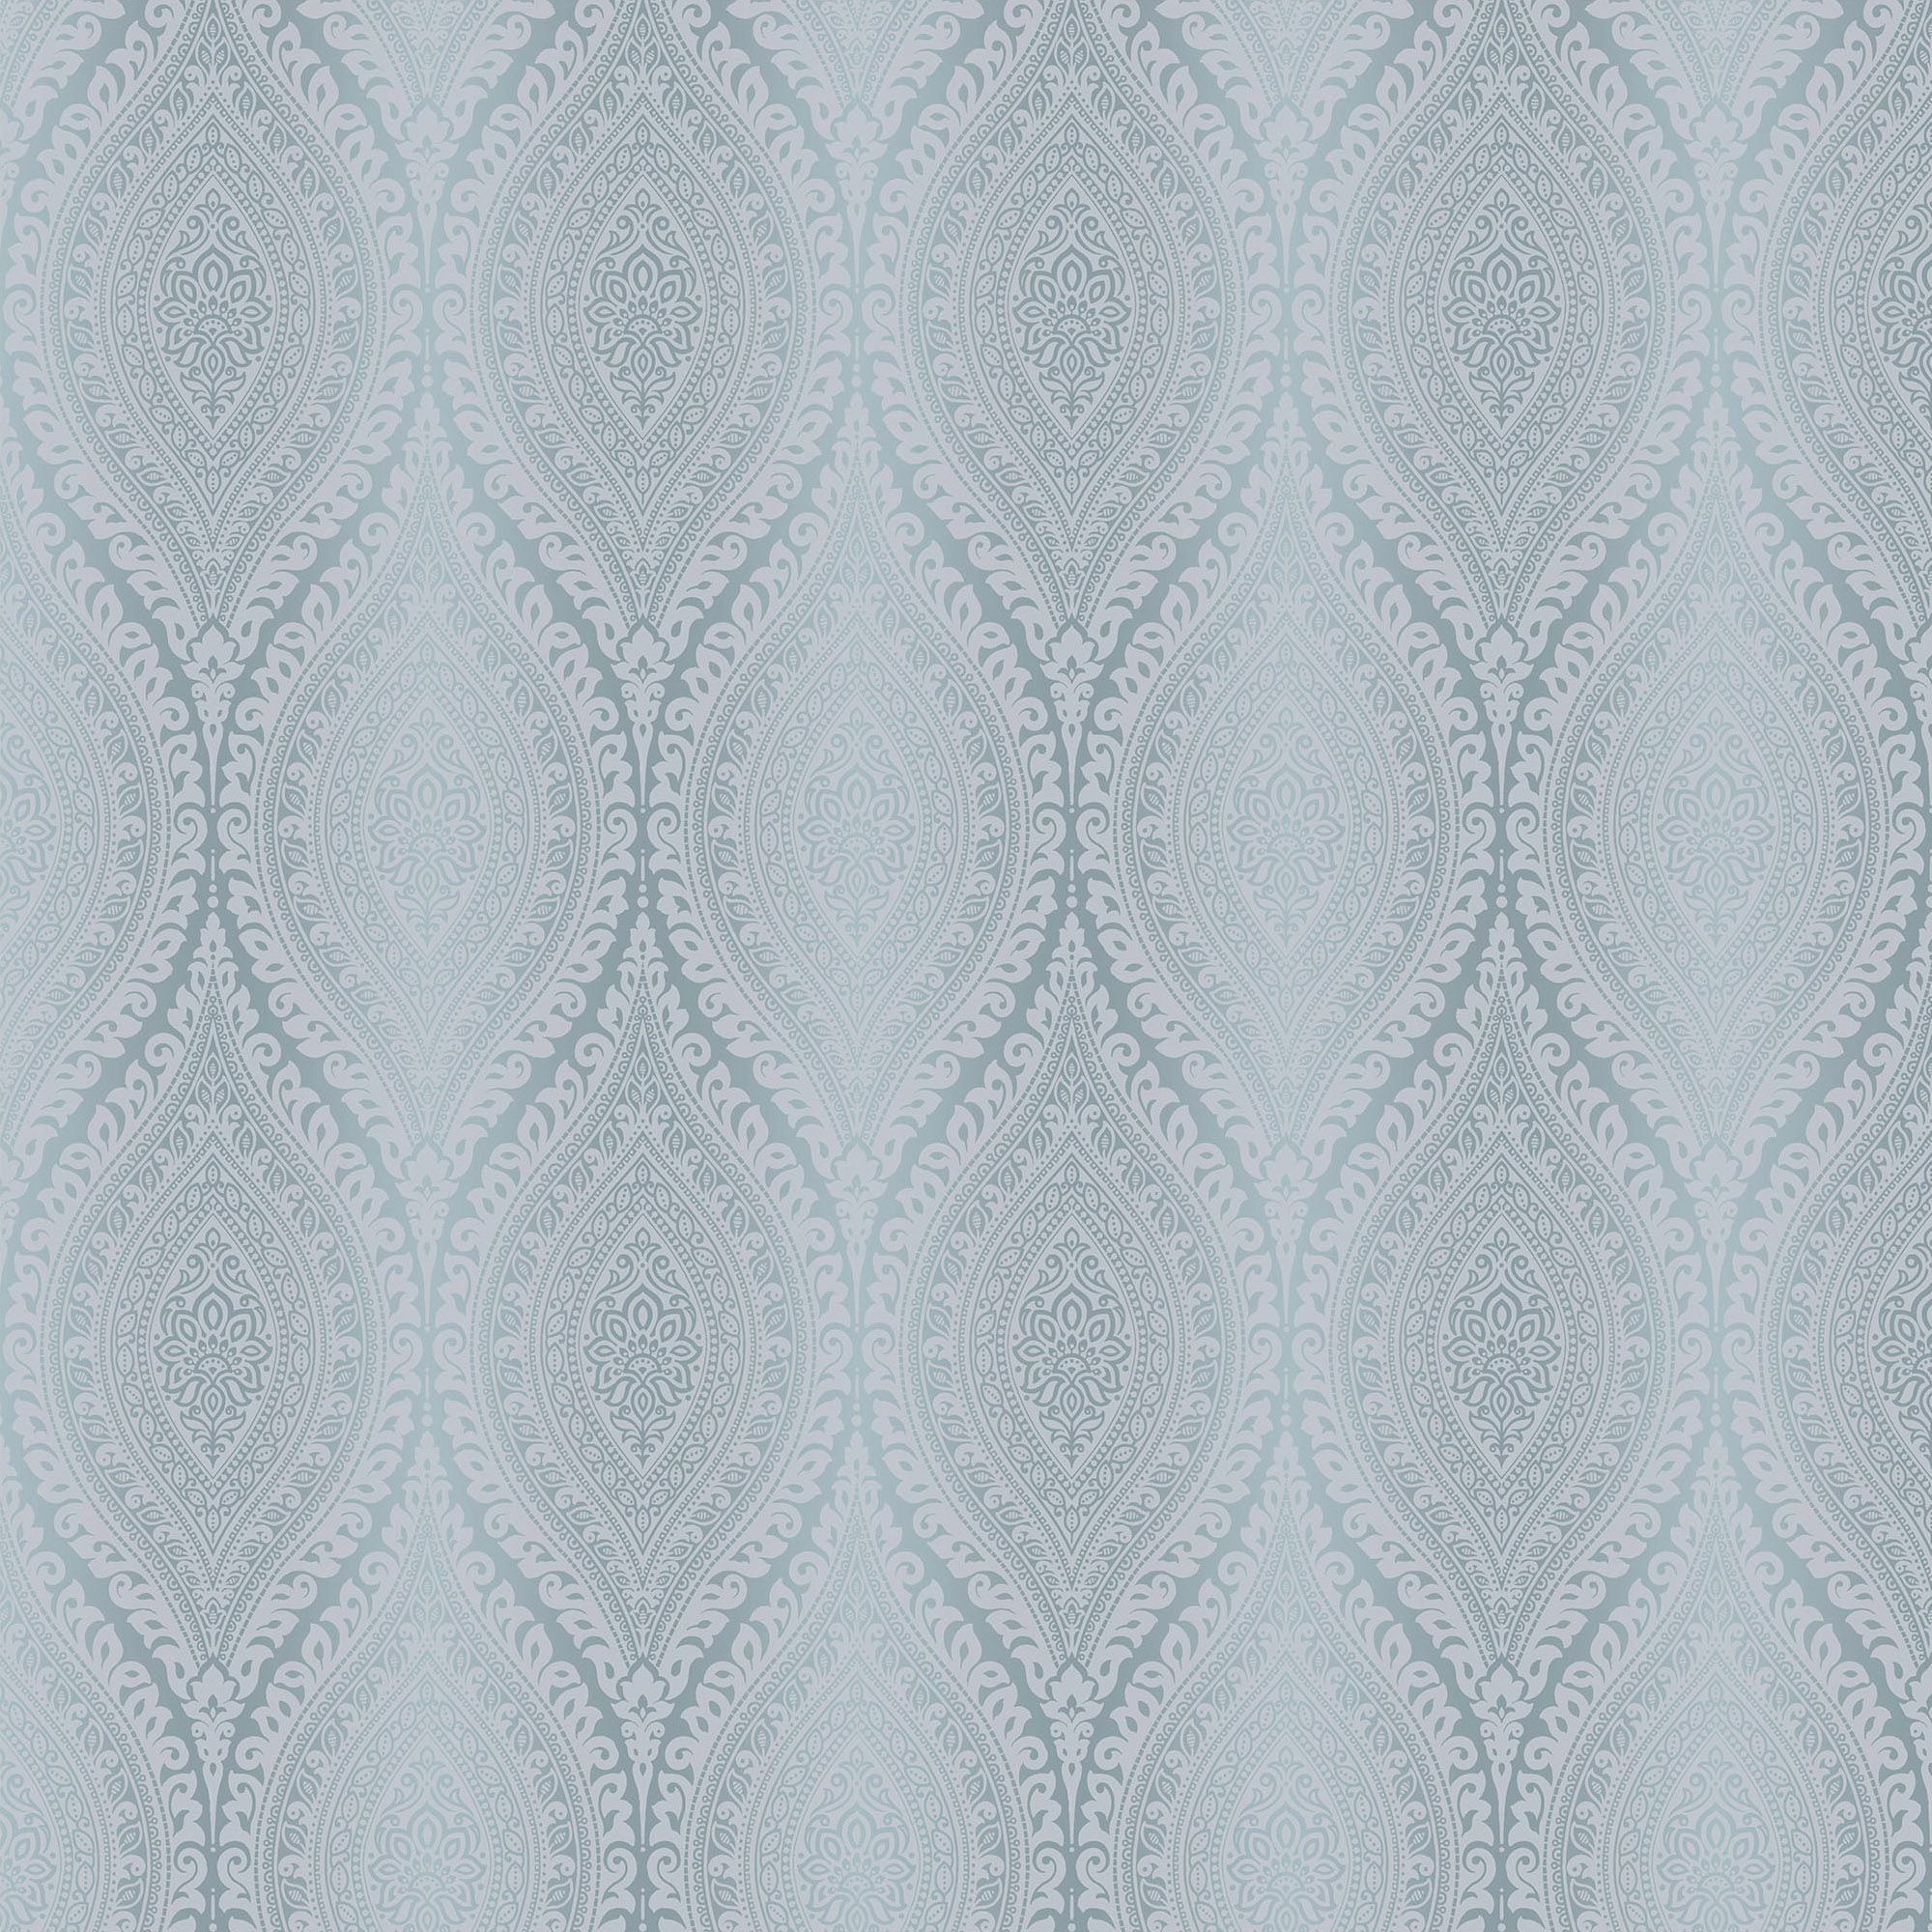 Celosi Blue Damask Metallic effect Textured Wallpaper Sample